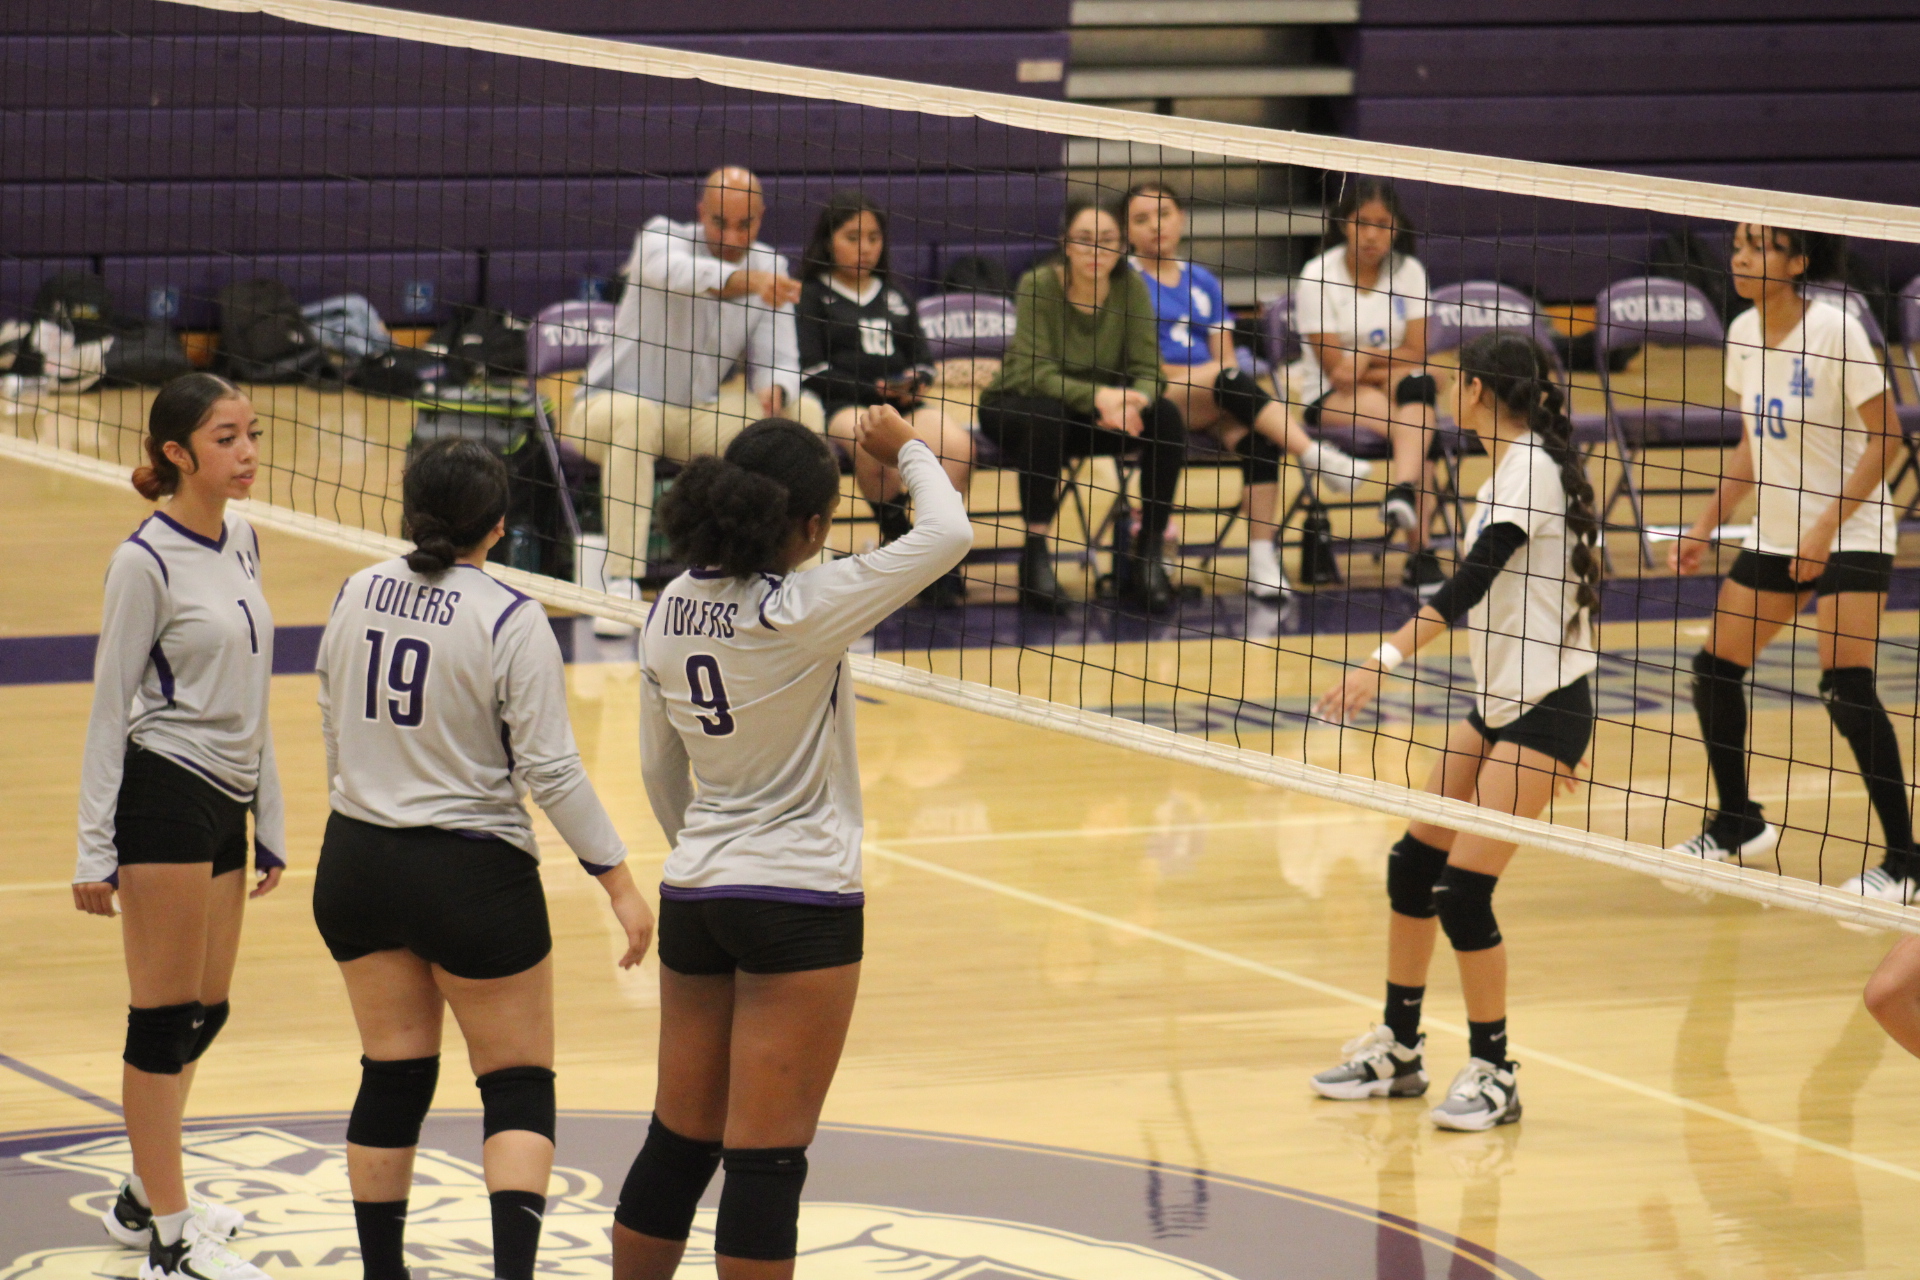 Toiler Girls Varsity Volleyball Defeats L. A. High School